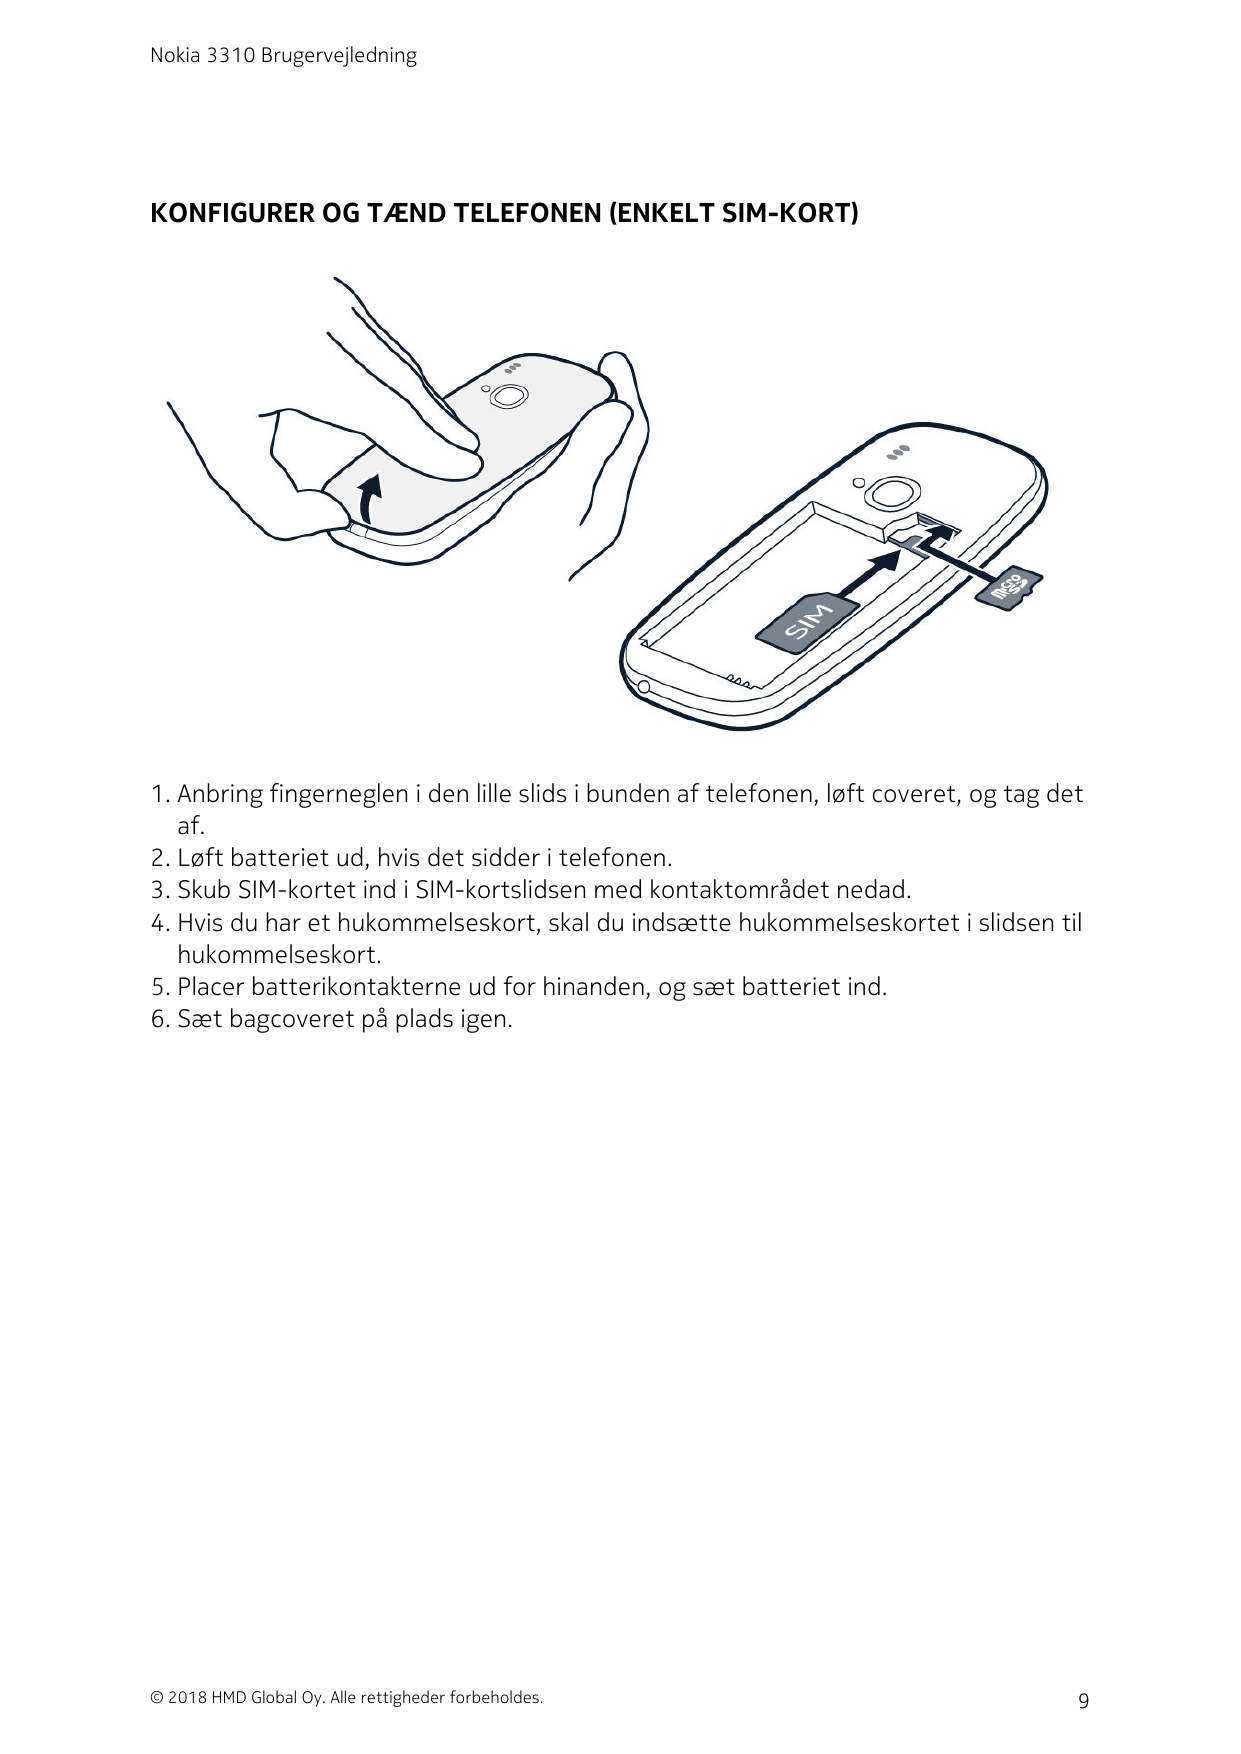 Nokia 3310 BrugervejledningKONFIGURER OG TÆND TELEFONEN (ENKELT SIM-KORT)1. Anbring fingerneglen i den lille slids i bunden af t